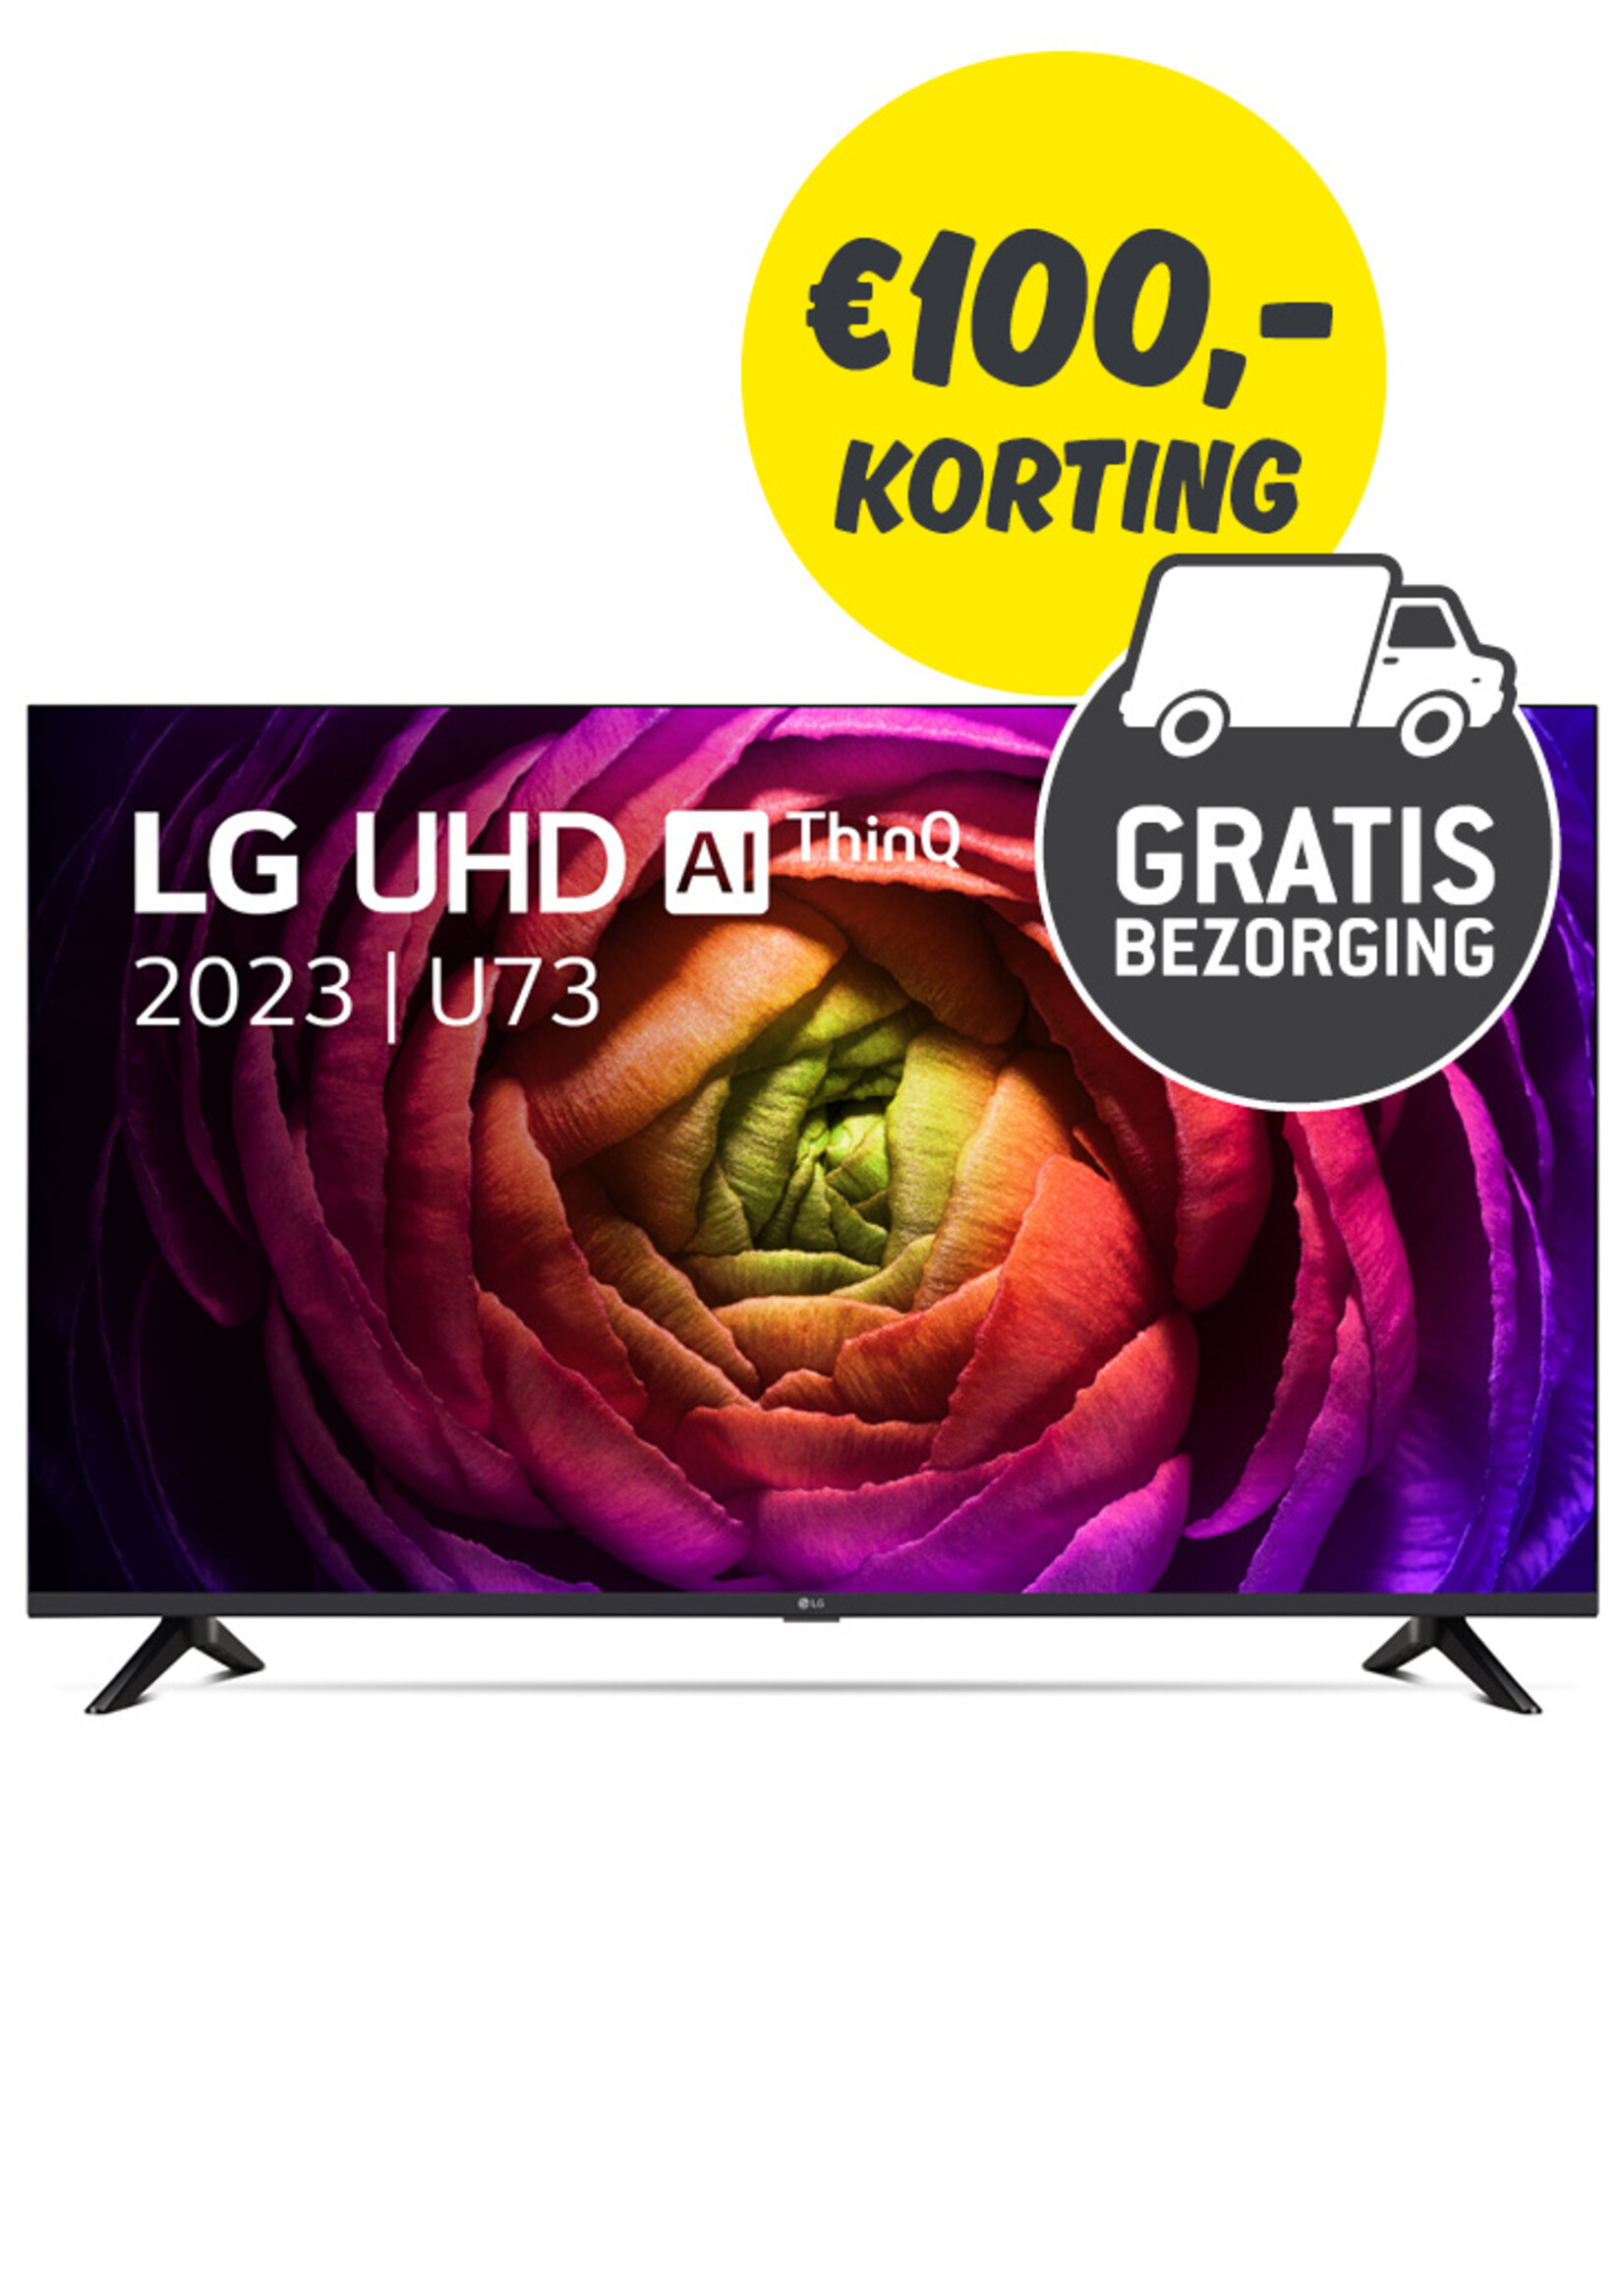 LG LG 43inch UHD TV 43UR73006LA (2023)